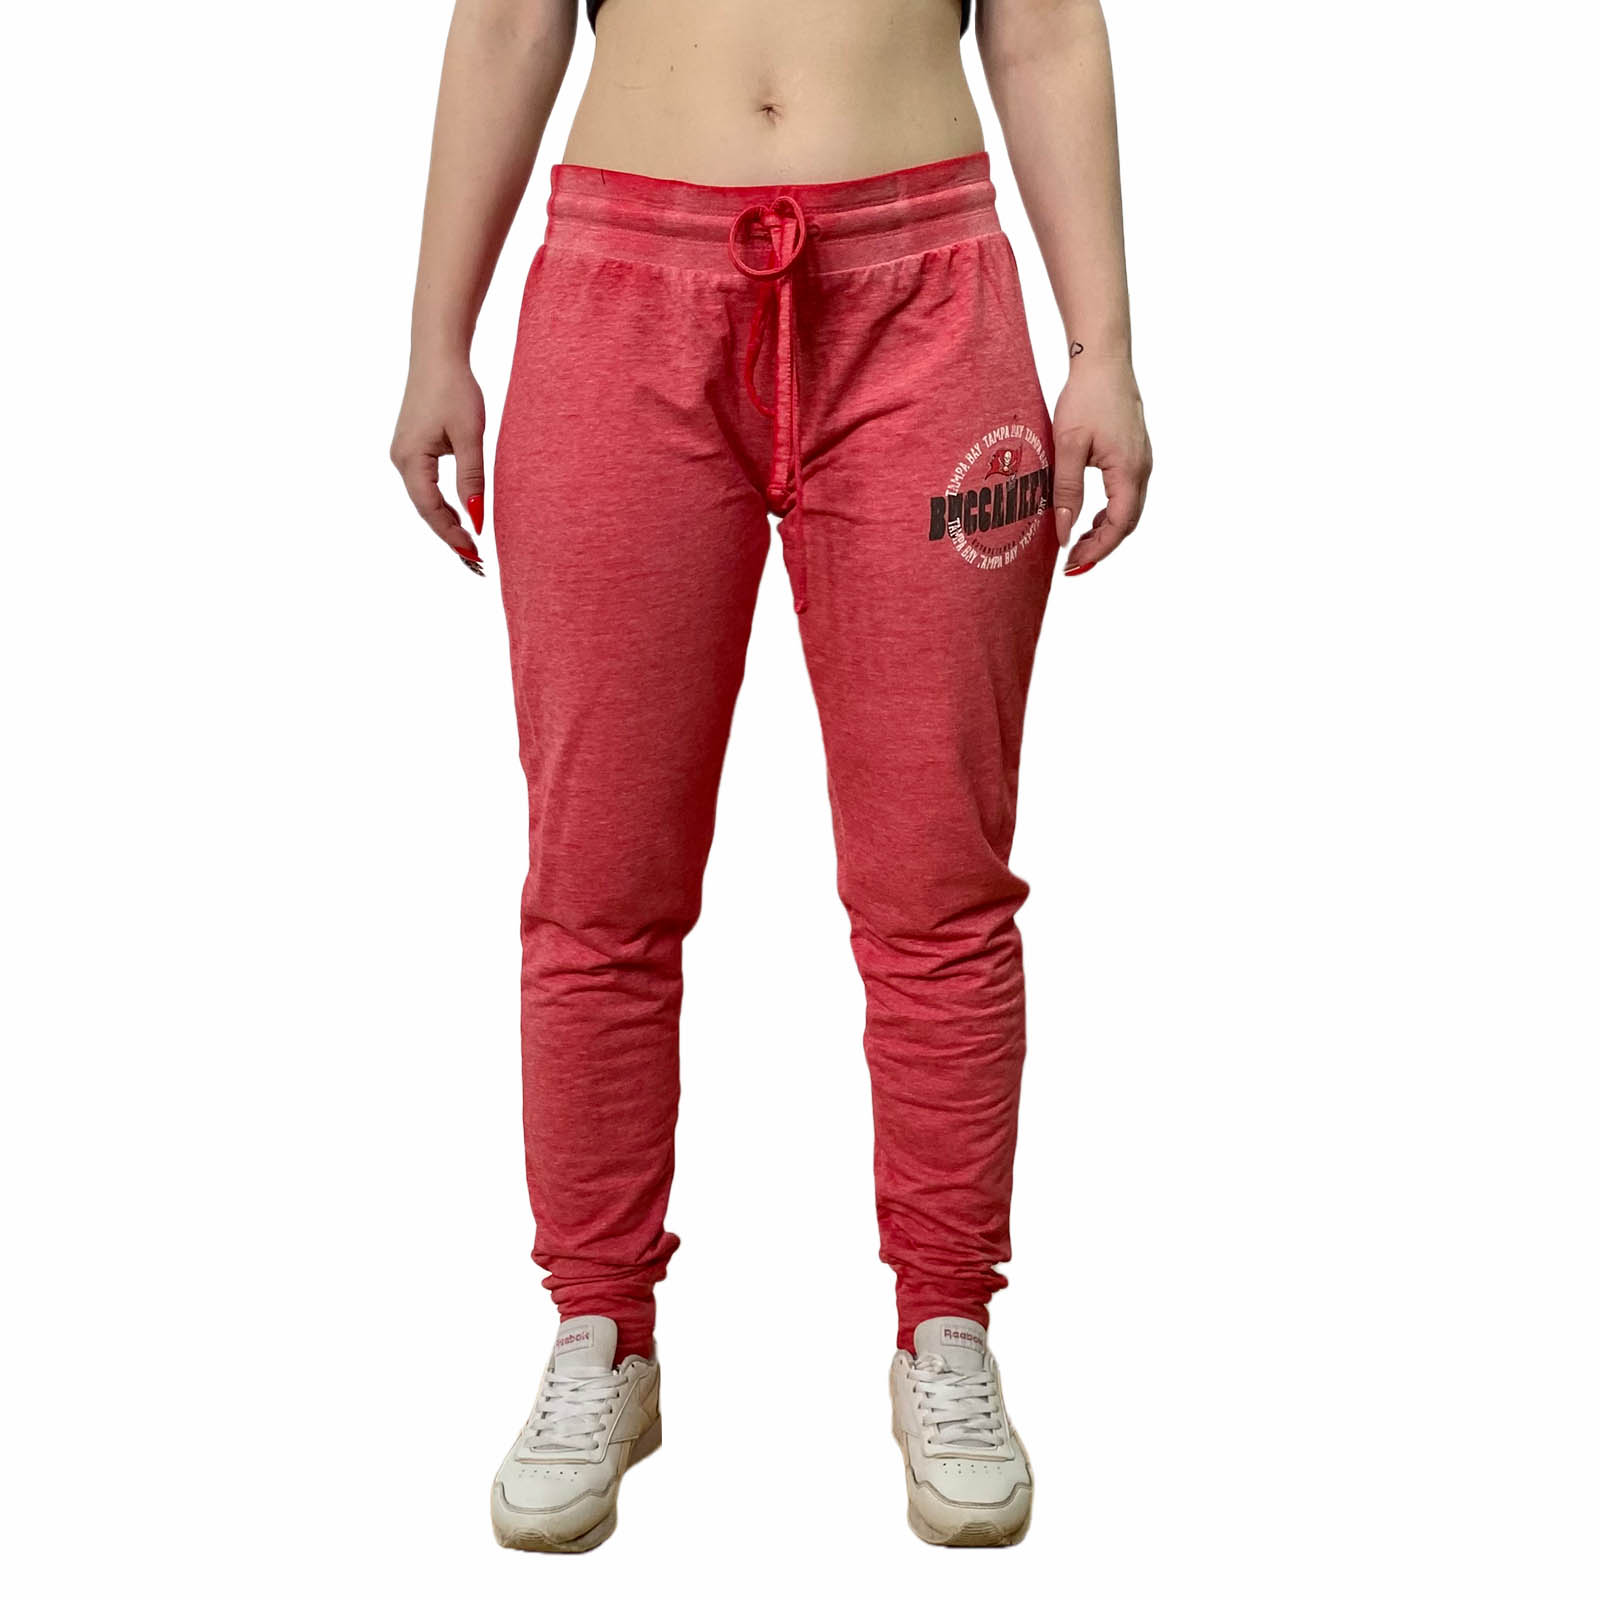 Купить в интернет магазине женские спортивные штаны